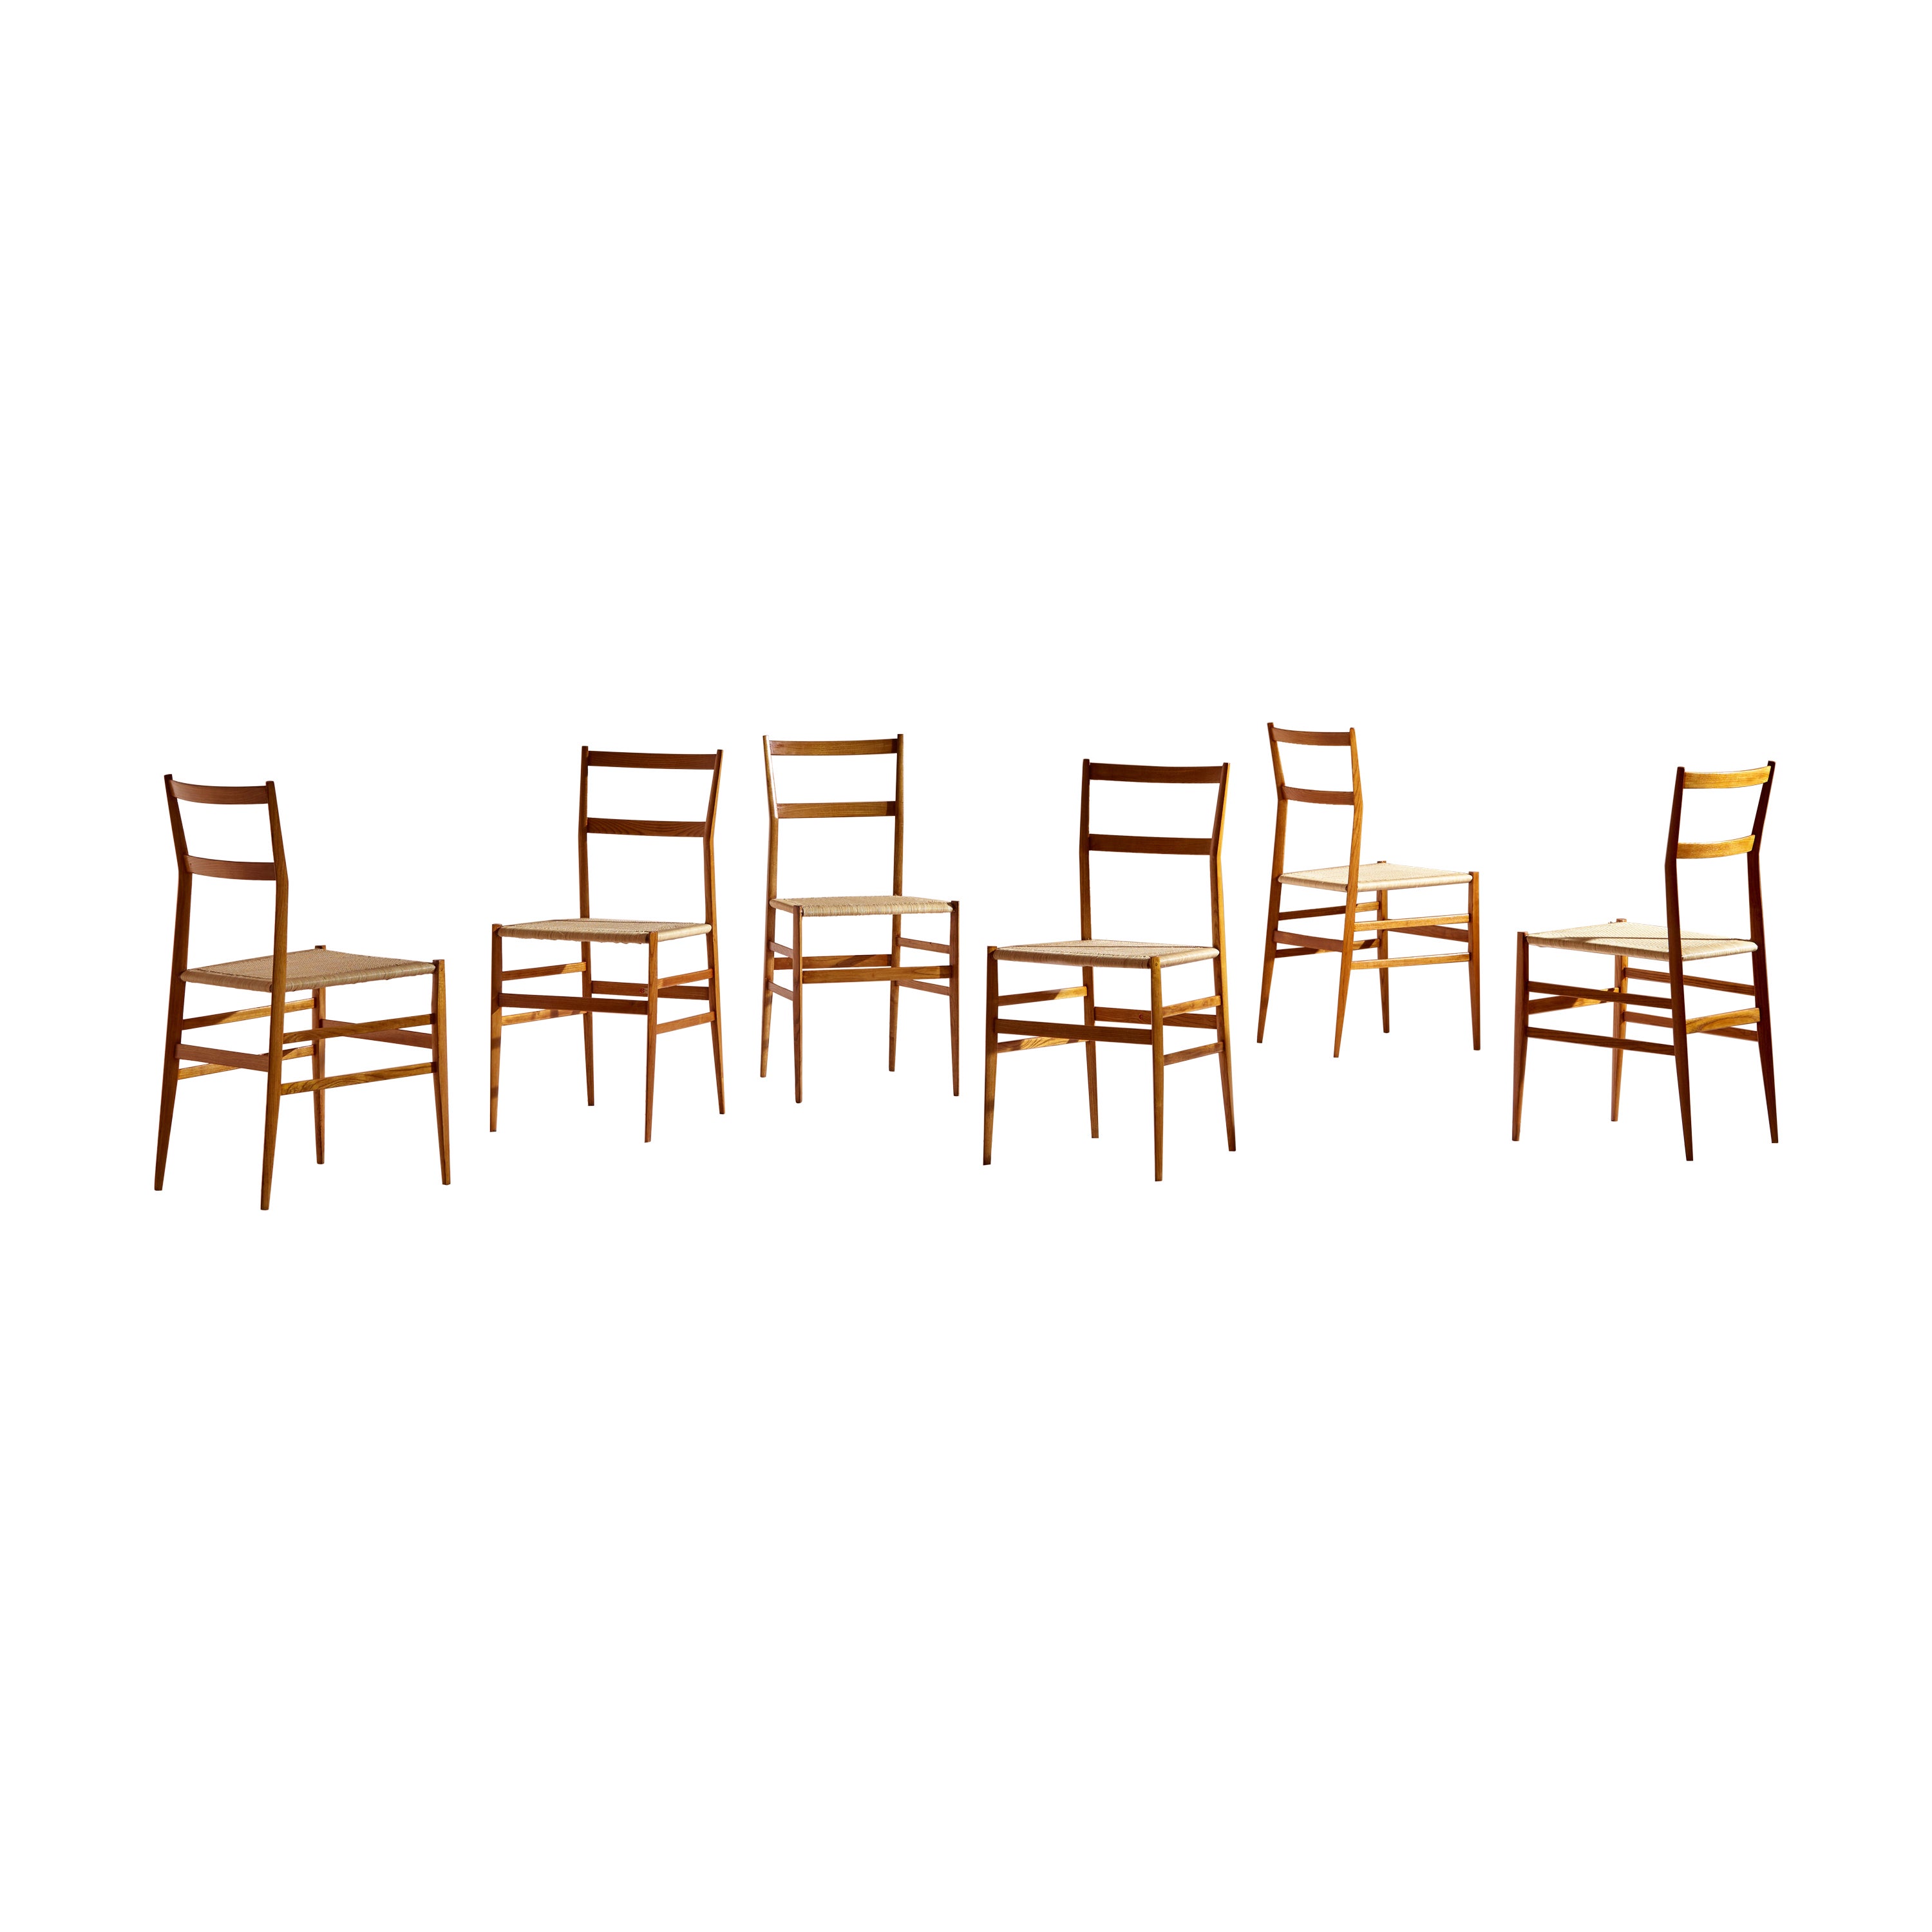 Gio Ponti, Satz von sechs Superleggera-Stühlen für Cassina, Italien, 1957